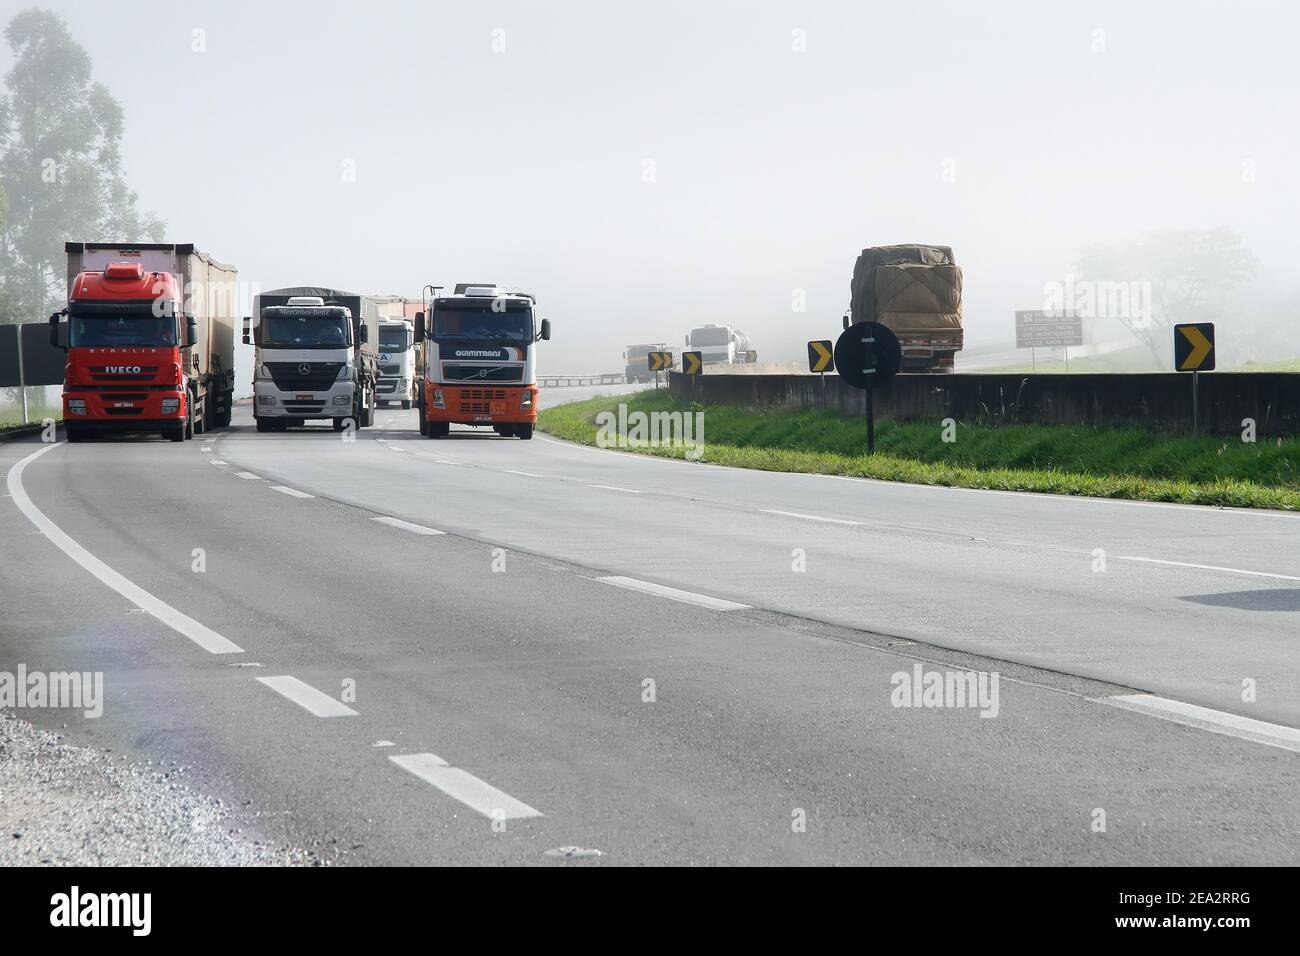 Minas Gerais, Brésil - 27 février 2015 : circulation et manutention de camions de transport sur l'autoroute Fernao Dias, BR 381 Banque D'Images